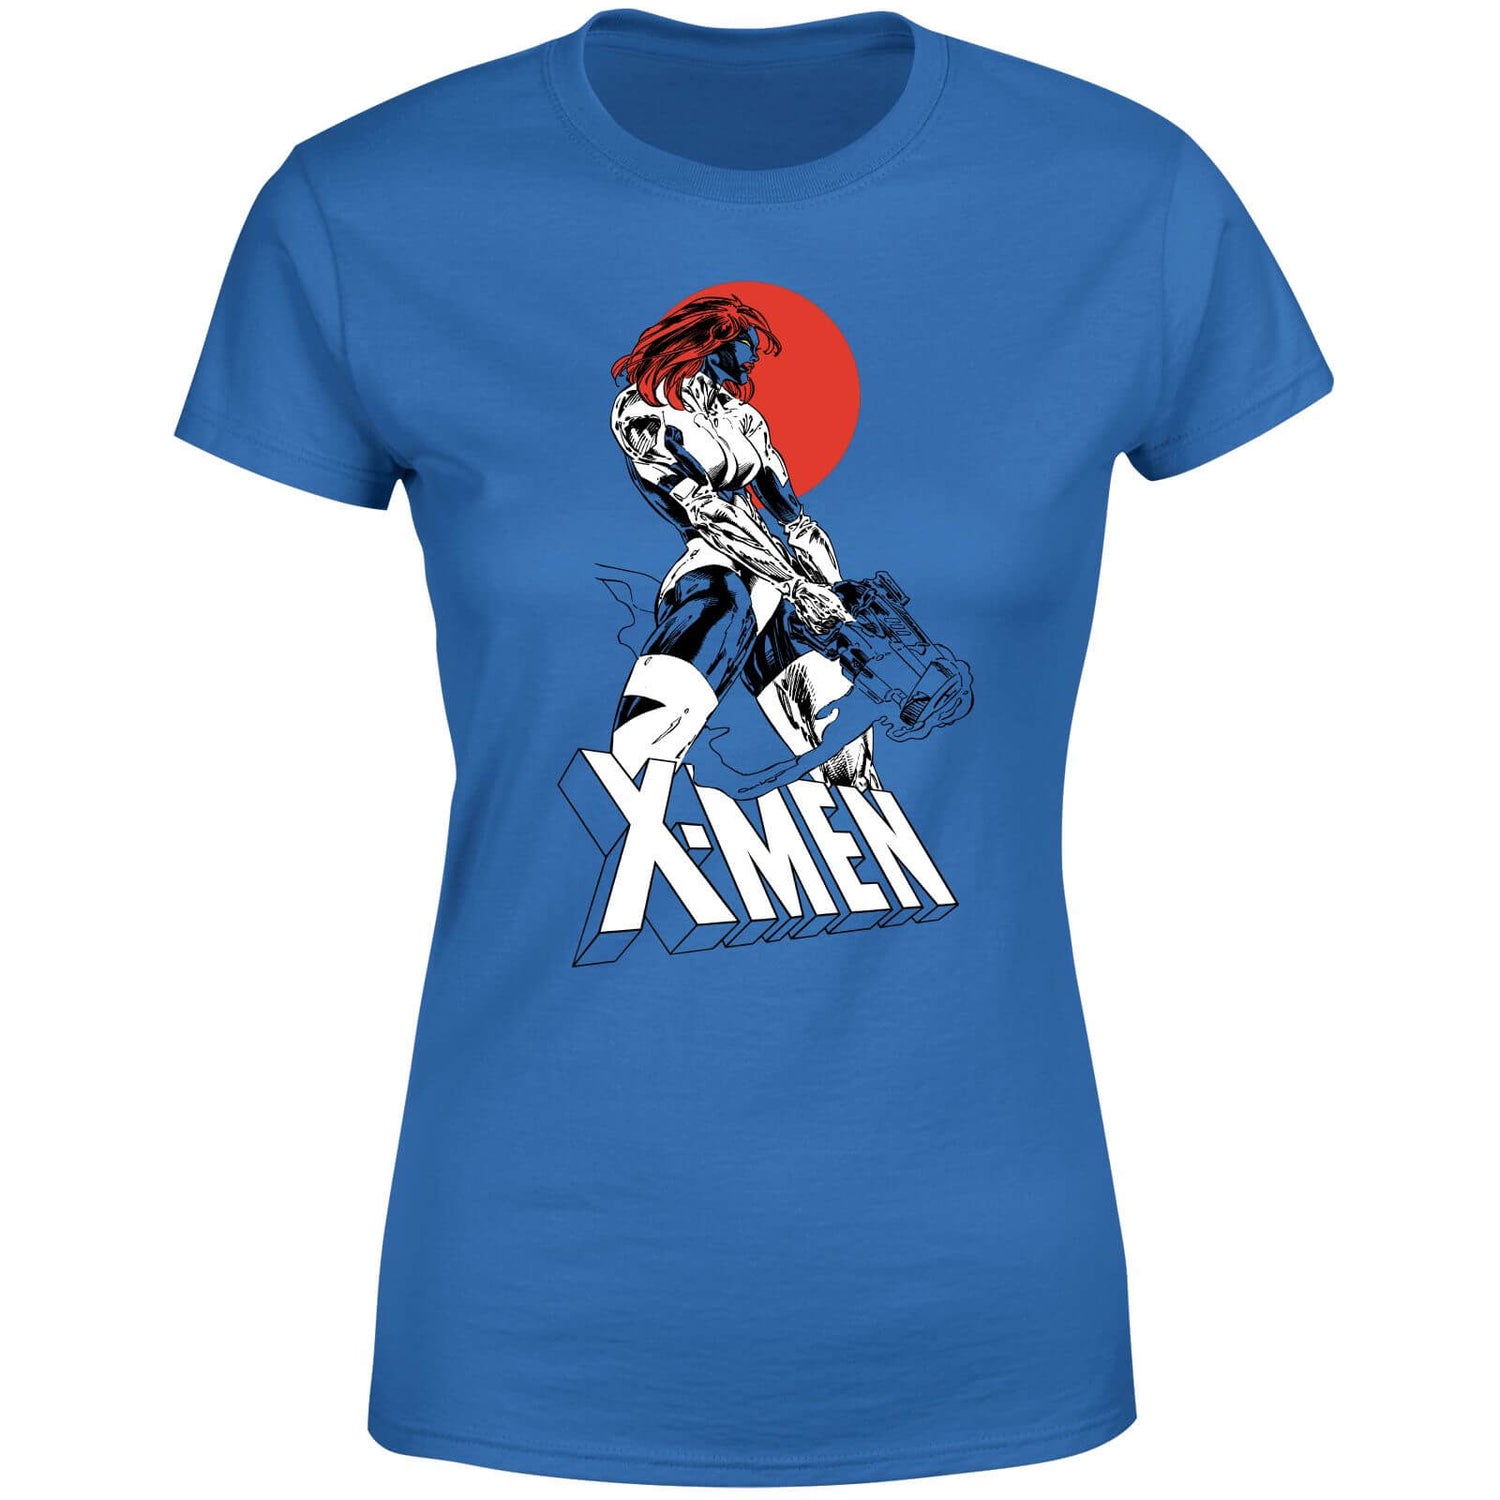 X-Men Mystique Women's T-Shirt - Blue